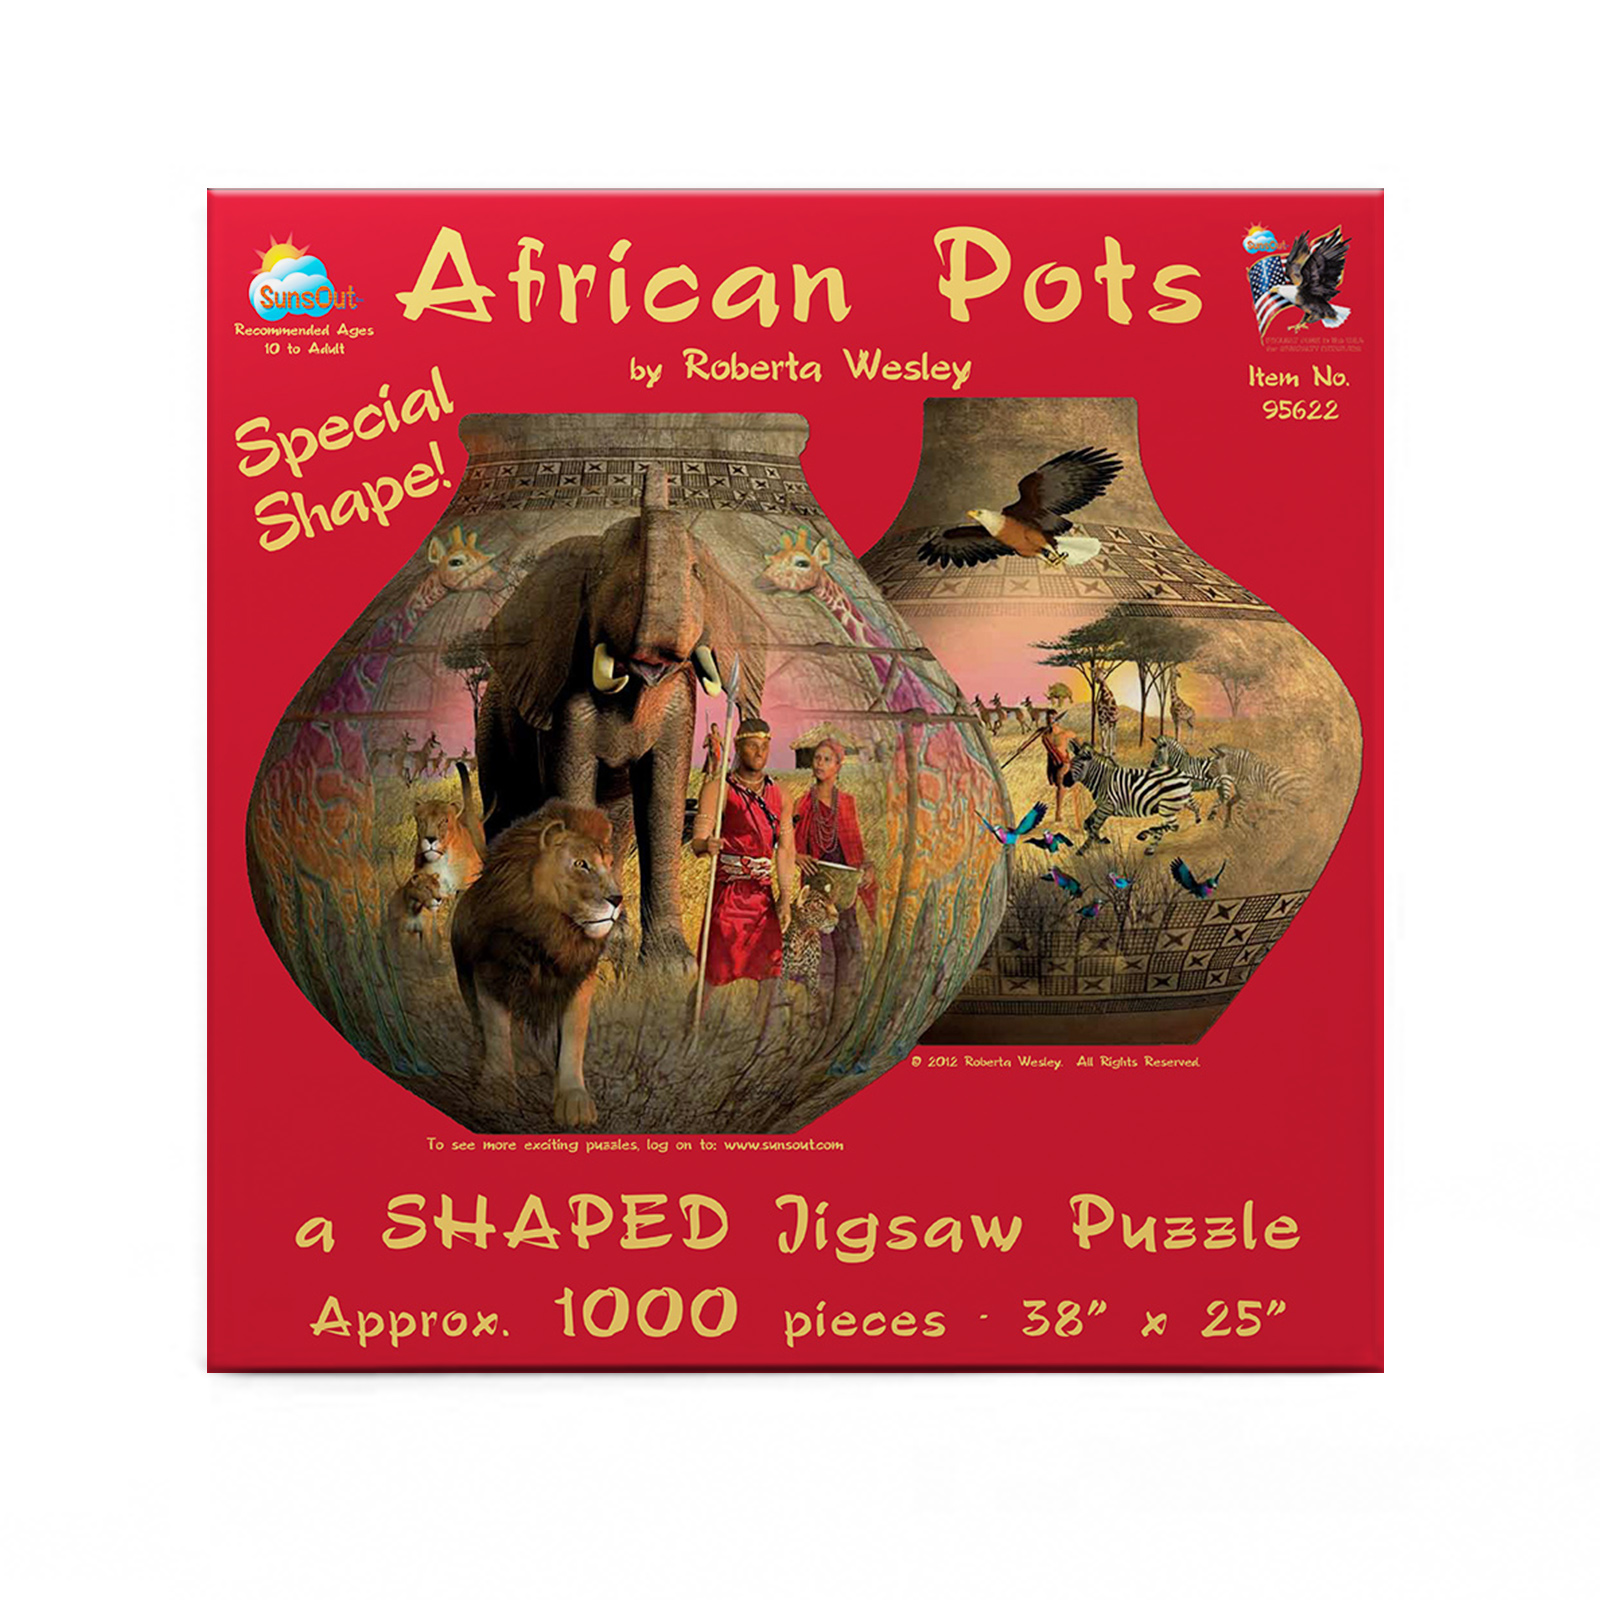 African Pots